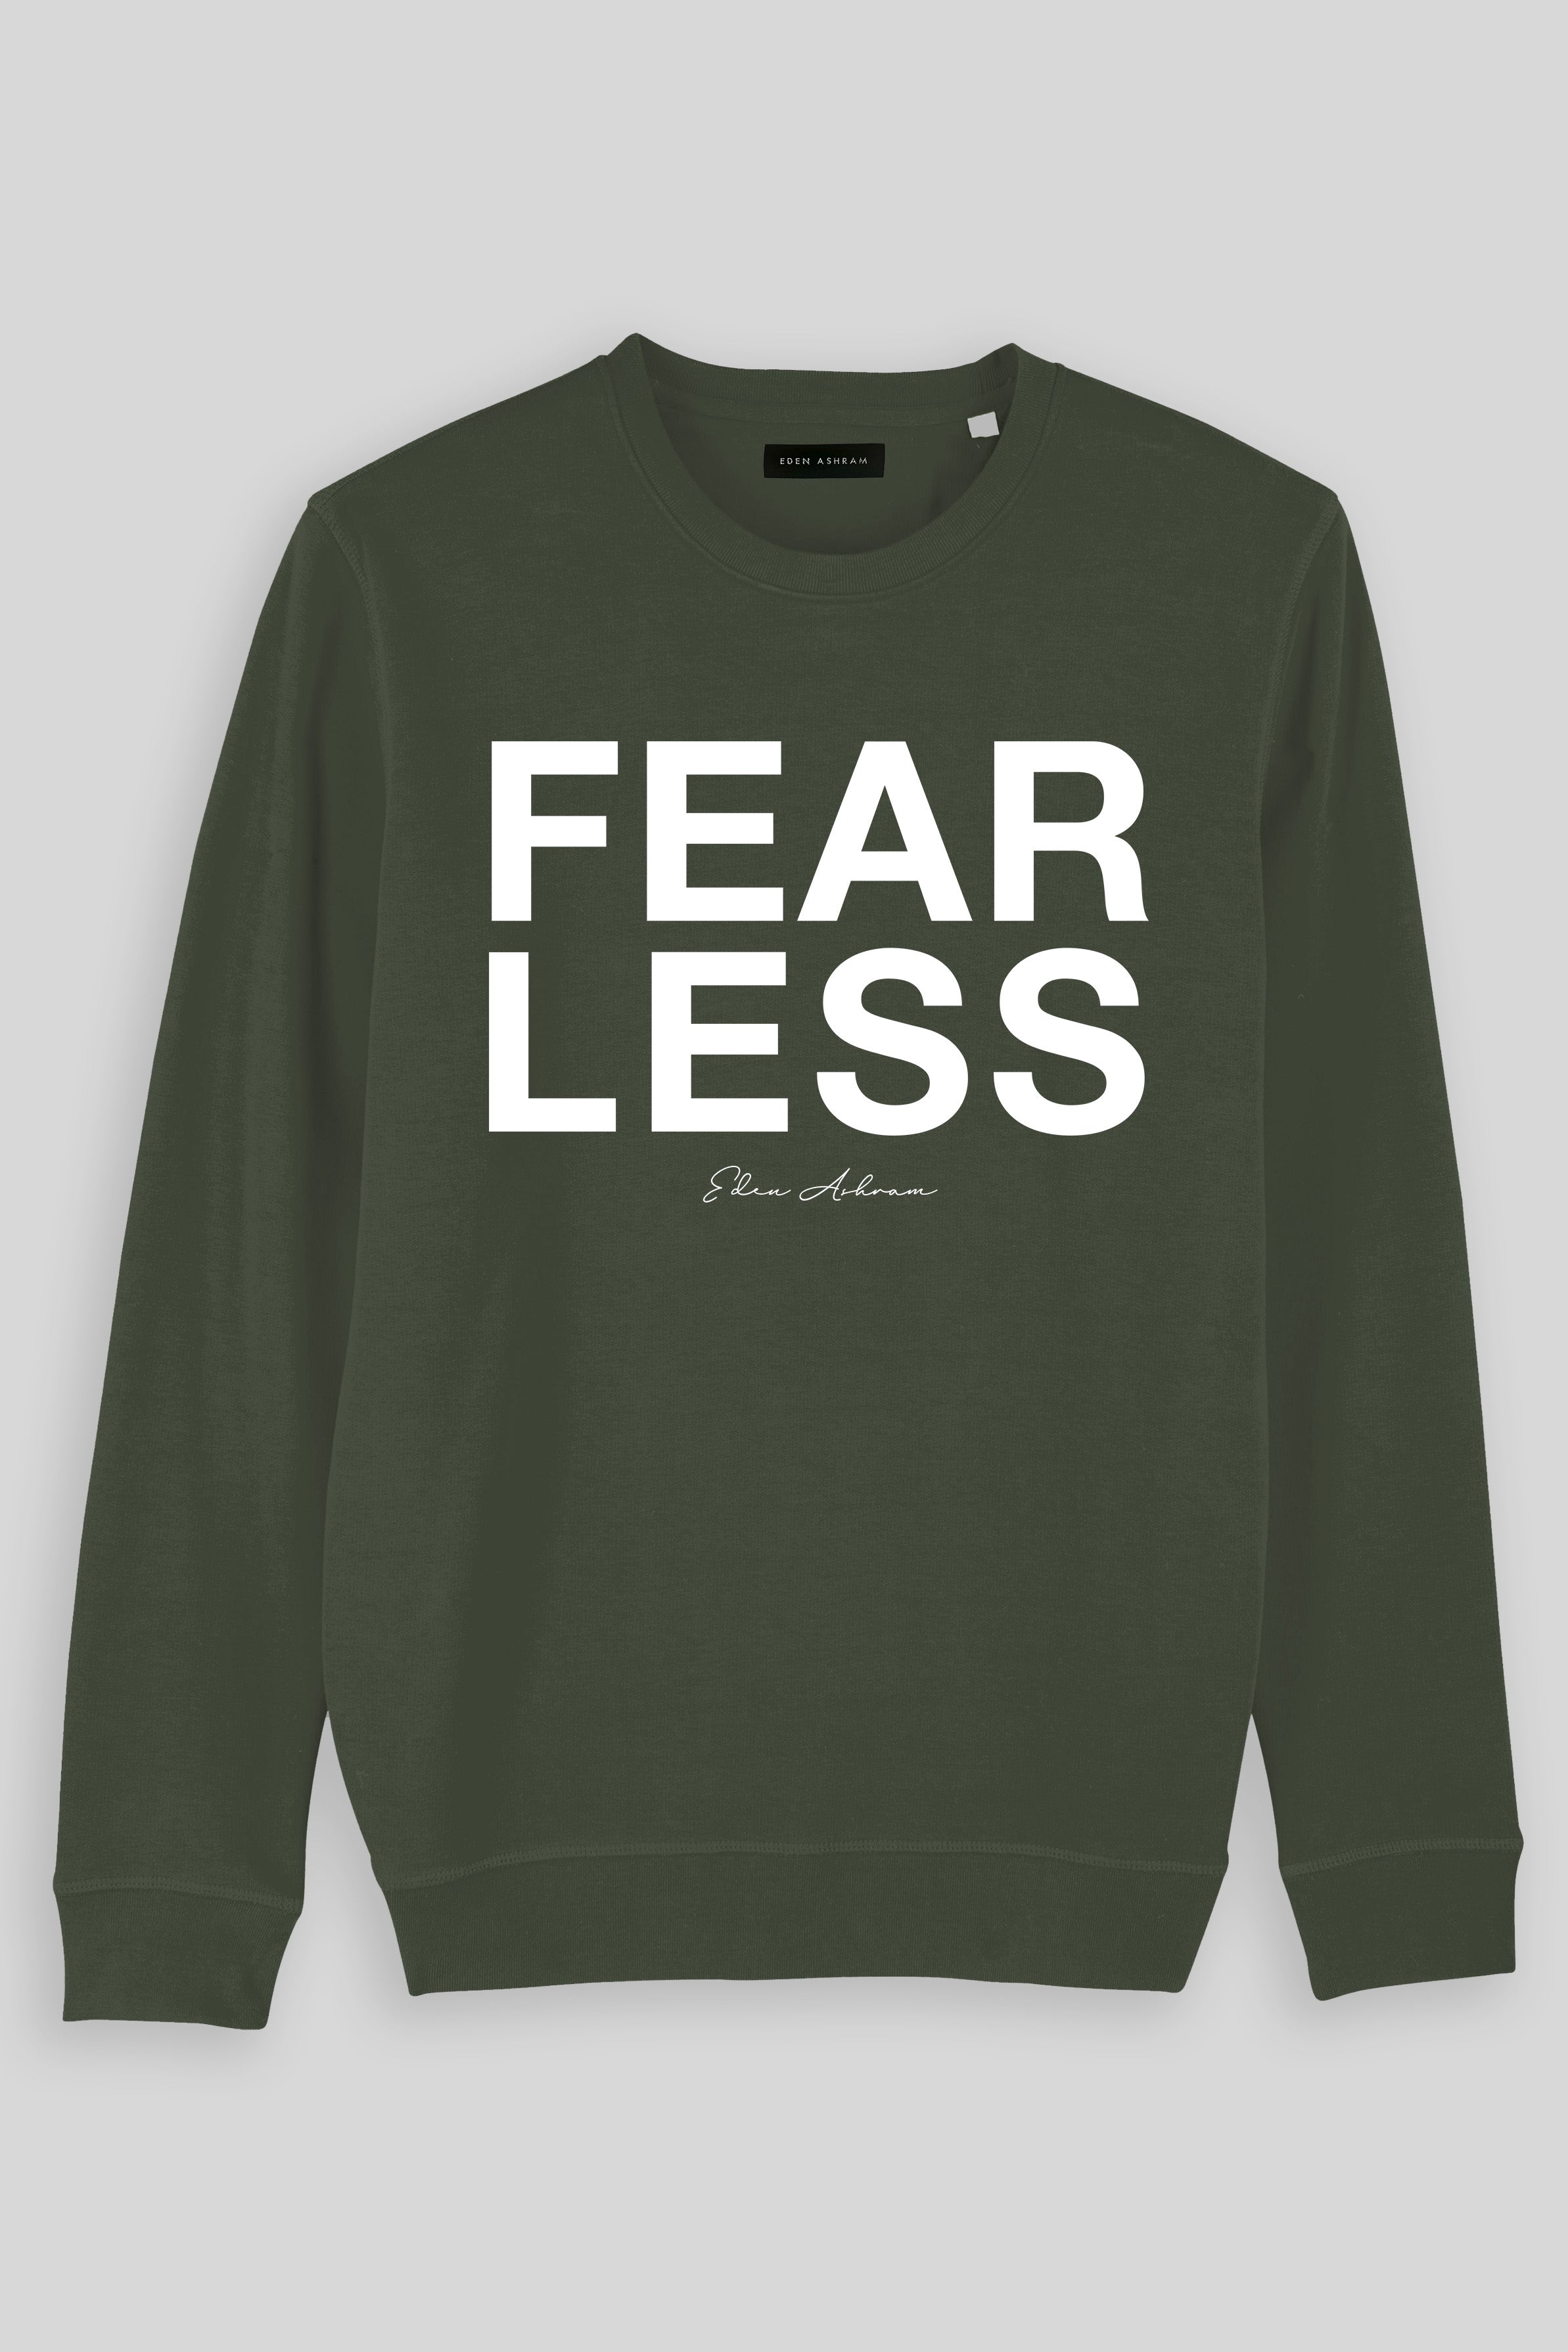 Eden Ashram Fear Less Premium Crew Neck Sweatshirt Khaki